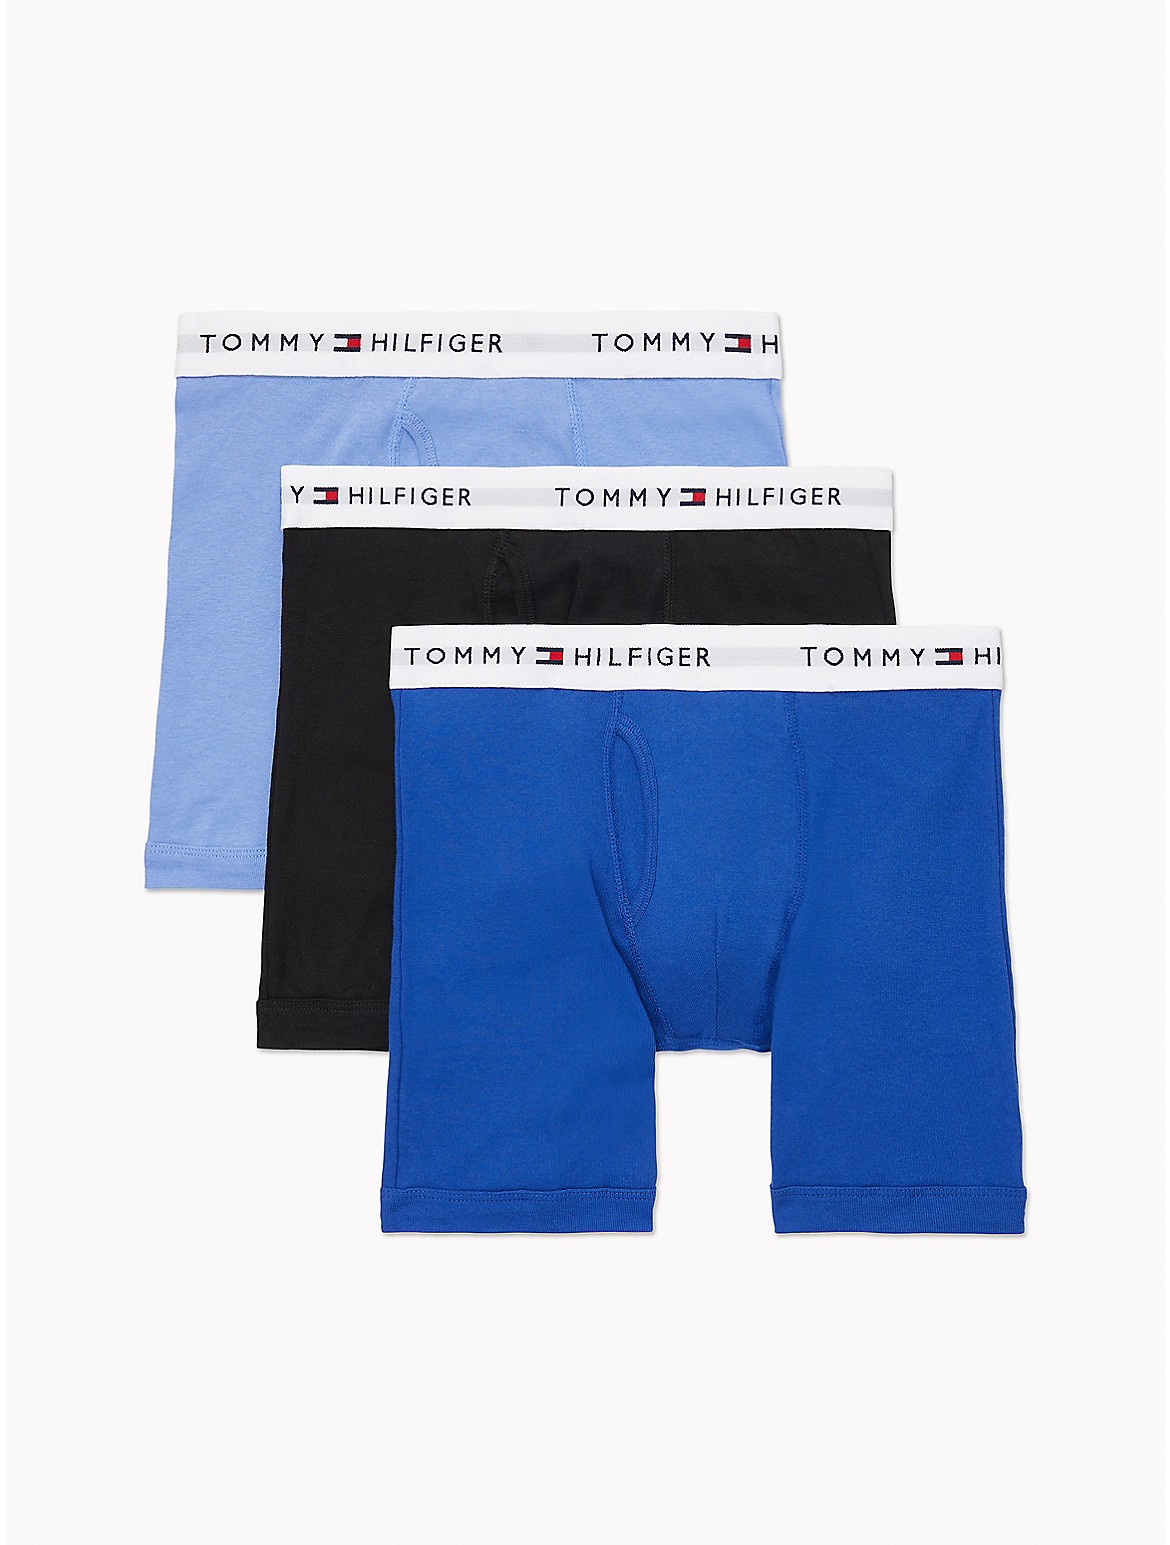 Tommy Hilfiger Men's Cotton Classics Boxer Brief 3-Pack - Blue - XL